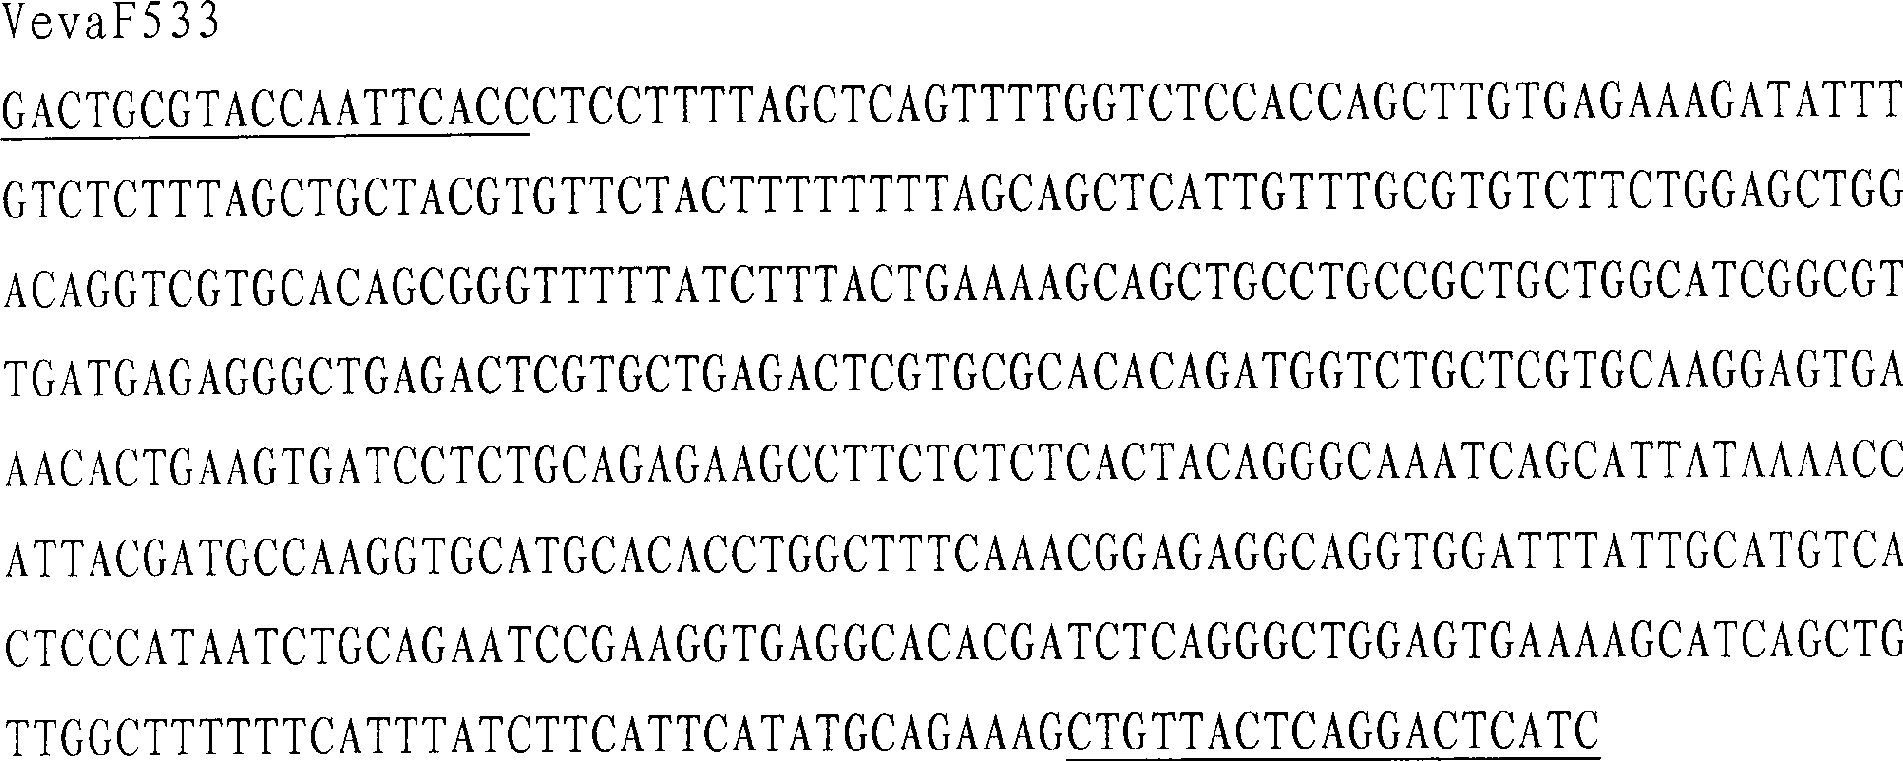 Special molecular marker for sex of verasper variegates, and genetic sex identification method